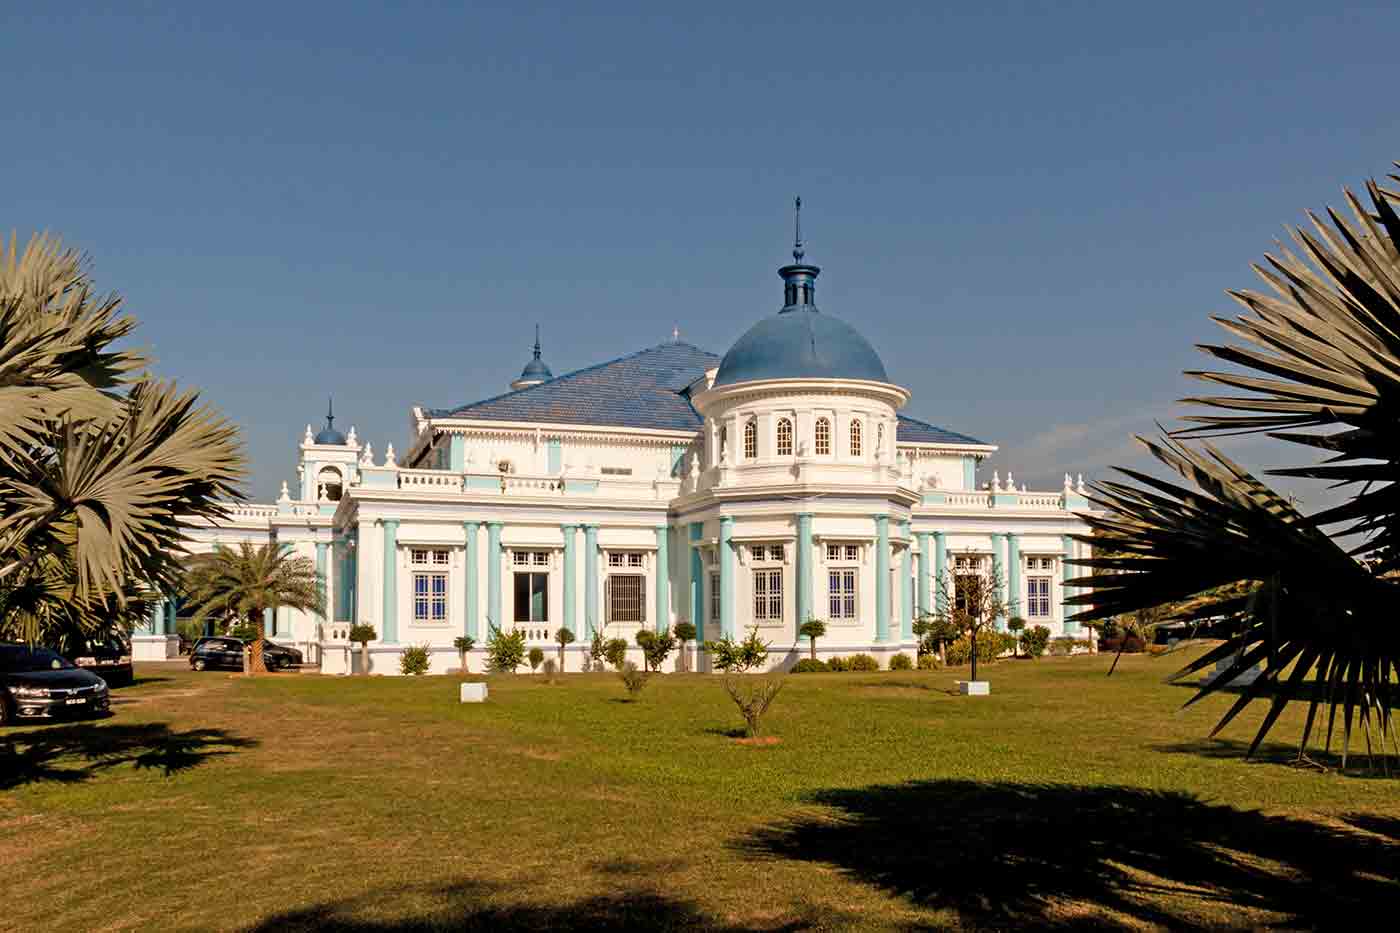 Sultan Ibrahim Jamek Mosque